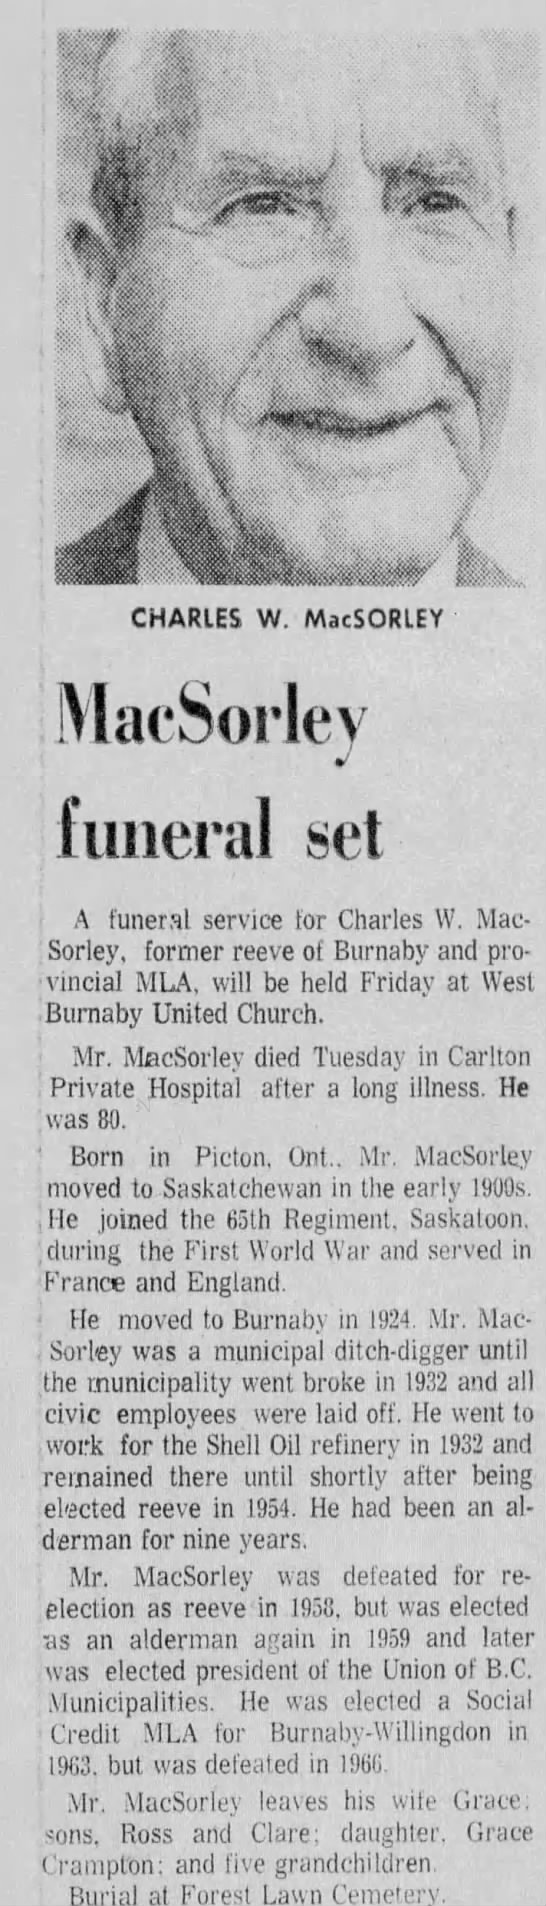 Obituary: CHARLES W. MacSORLEY (Aged 80) - 